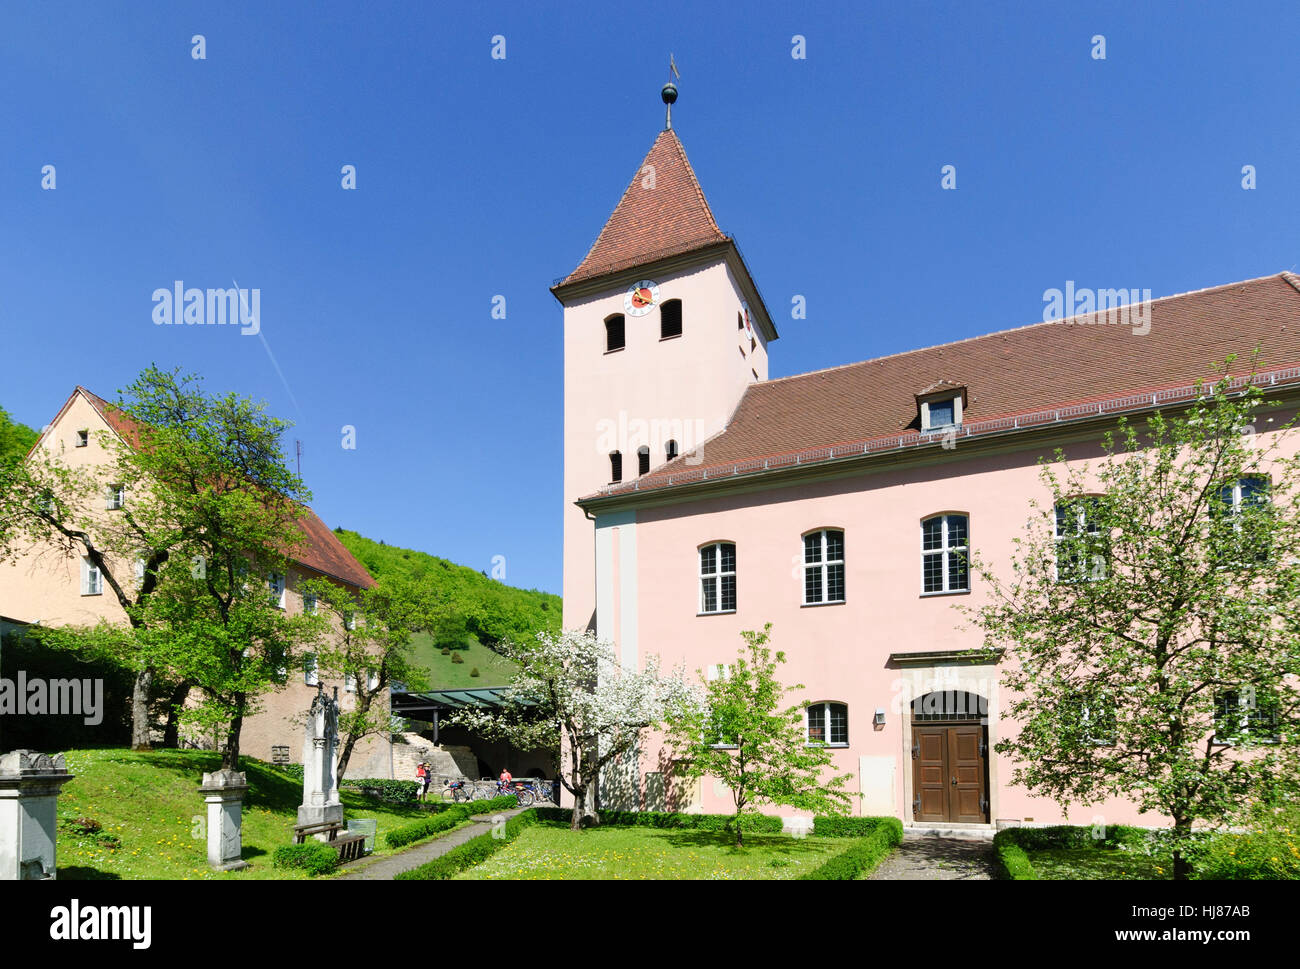 Solnhofen: St. Veit church, Mittelfranken, Middle Franconia, Bayern, Bavaria, Germany Stock Photo